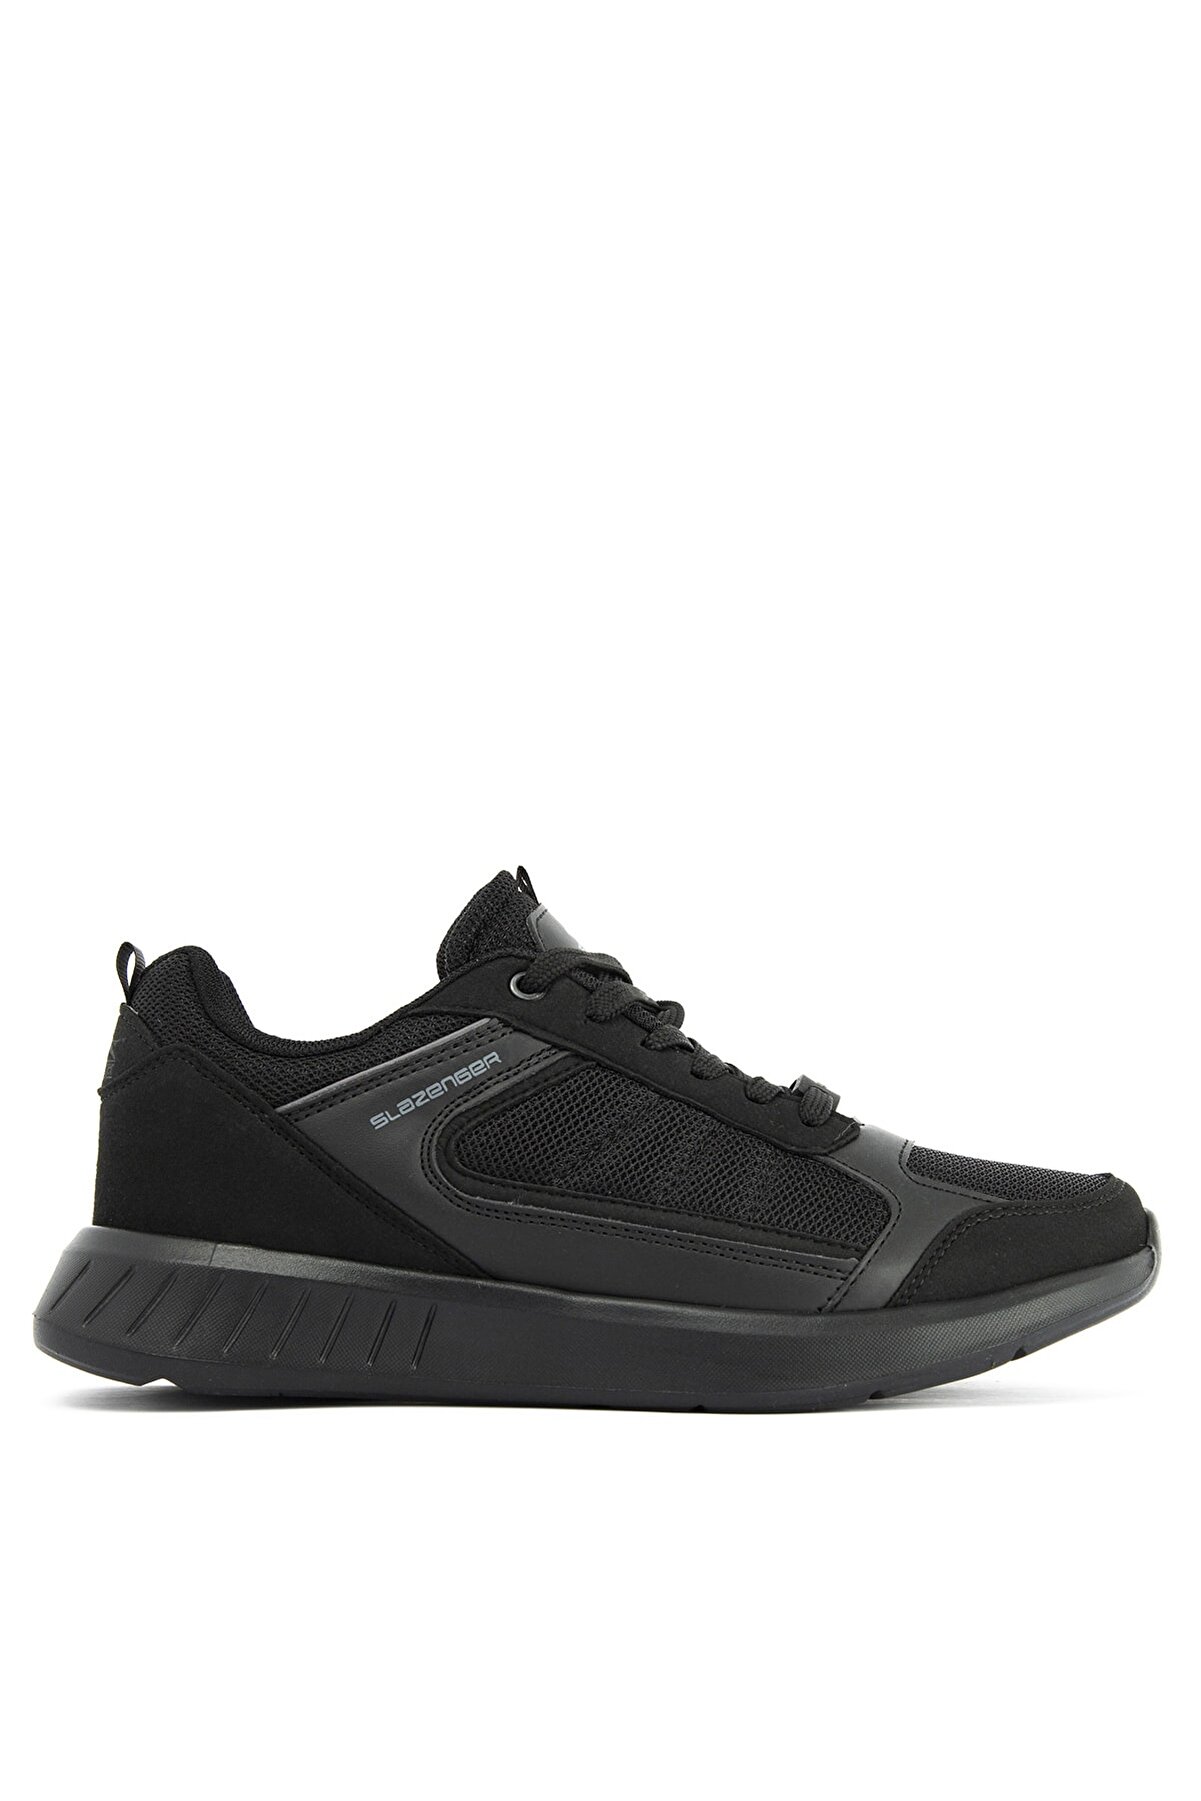 Slazenger Zurıh Sneaker Erkek Ayakkabı Siyah / Siyah Sa11re041